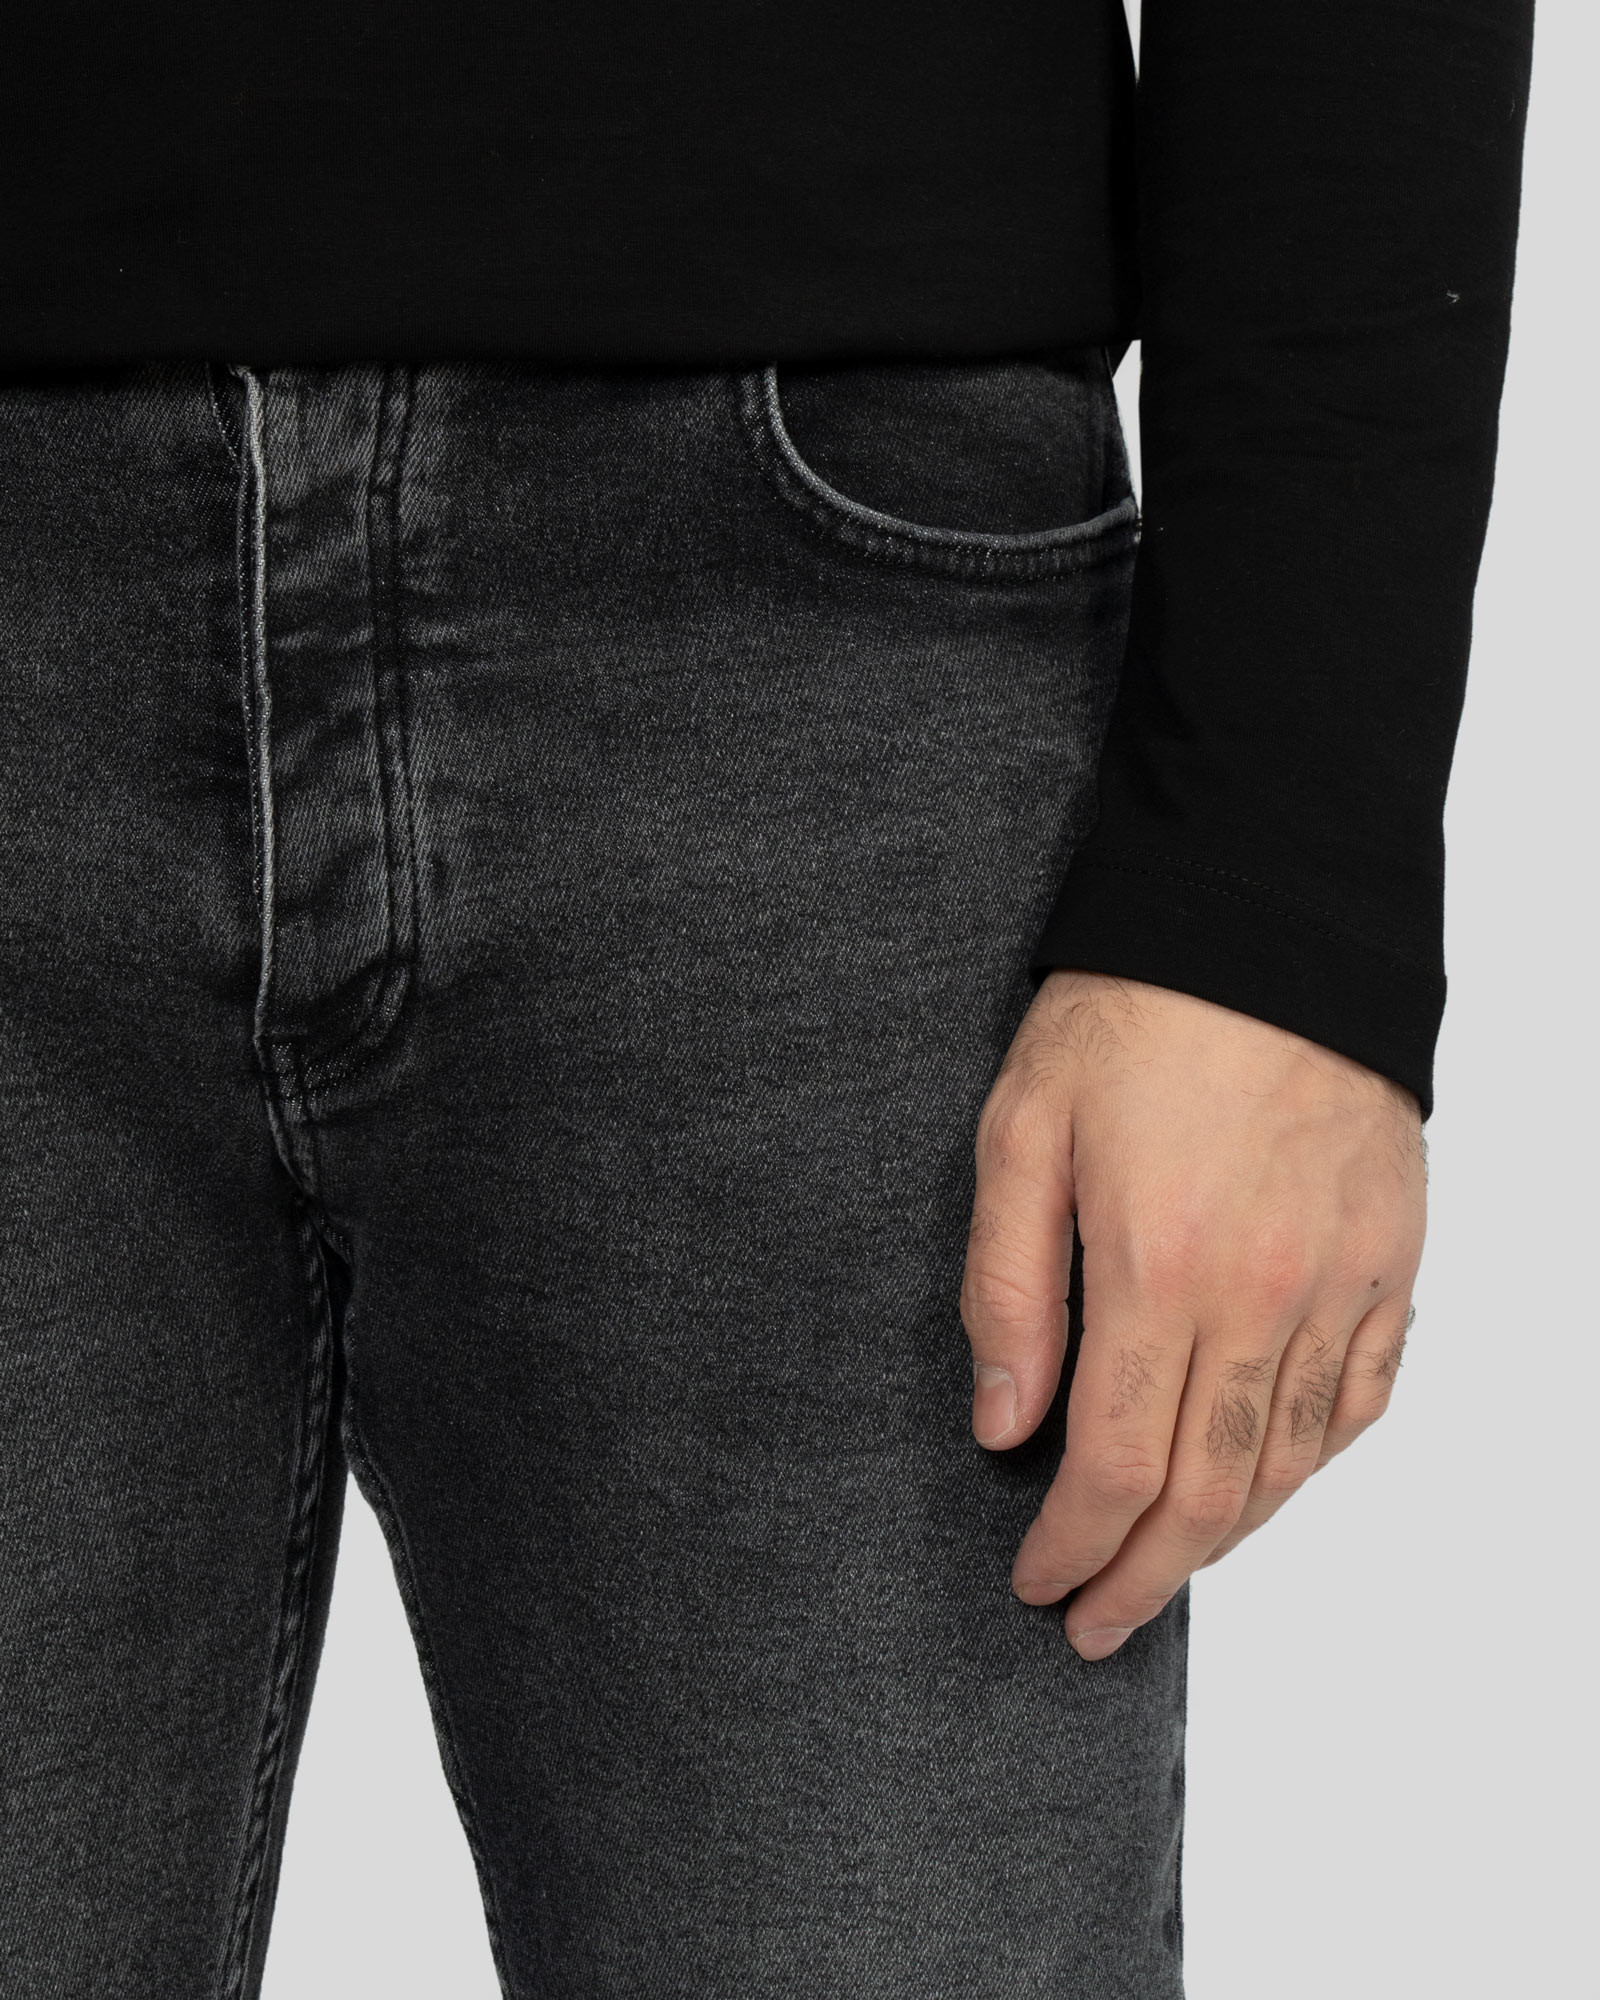 خرید و قیمت شلوار جین ساده اسکینی مردانه مشکی 22310240